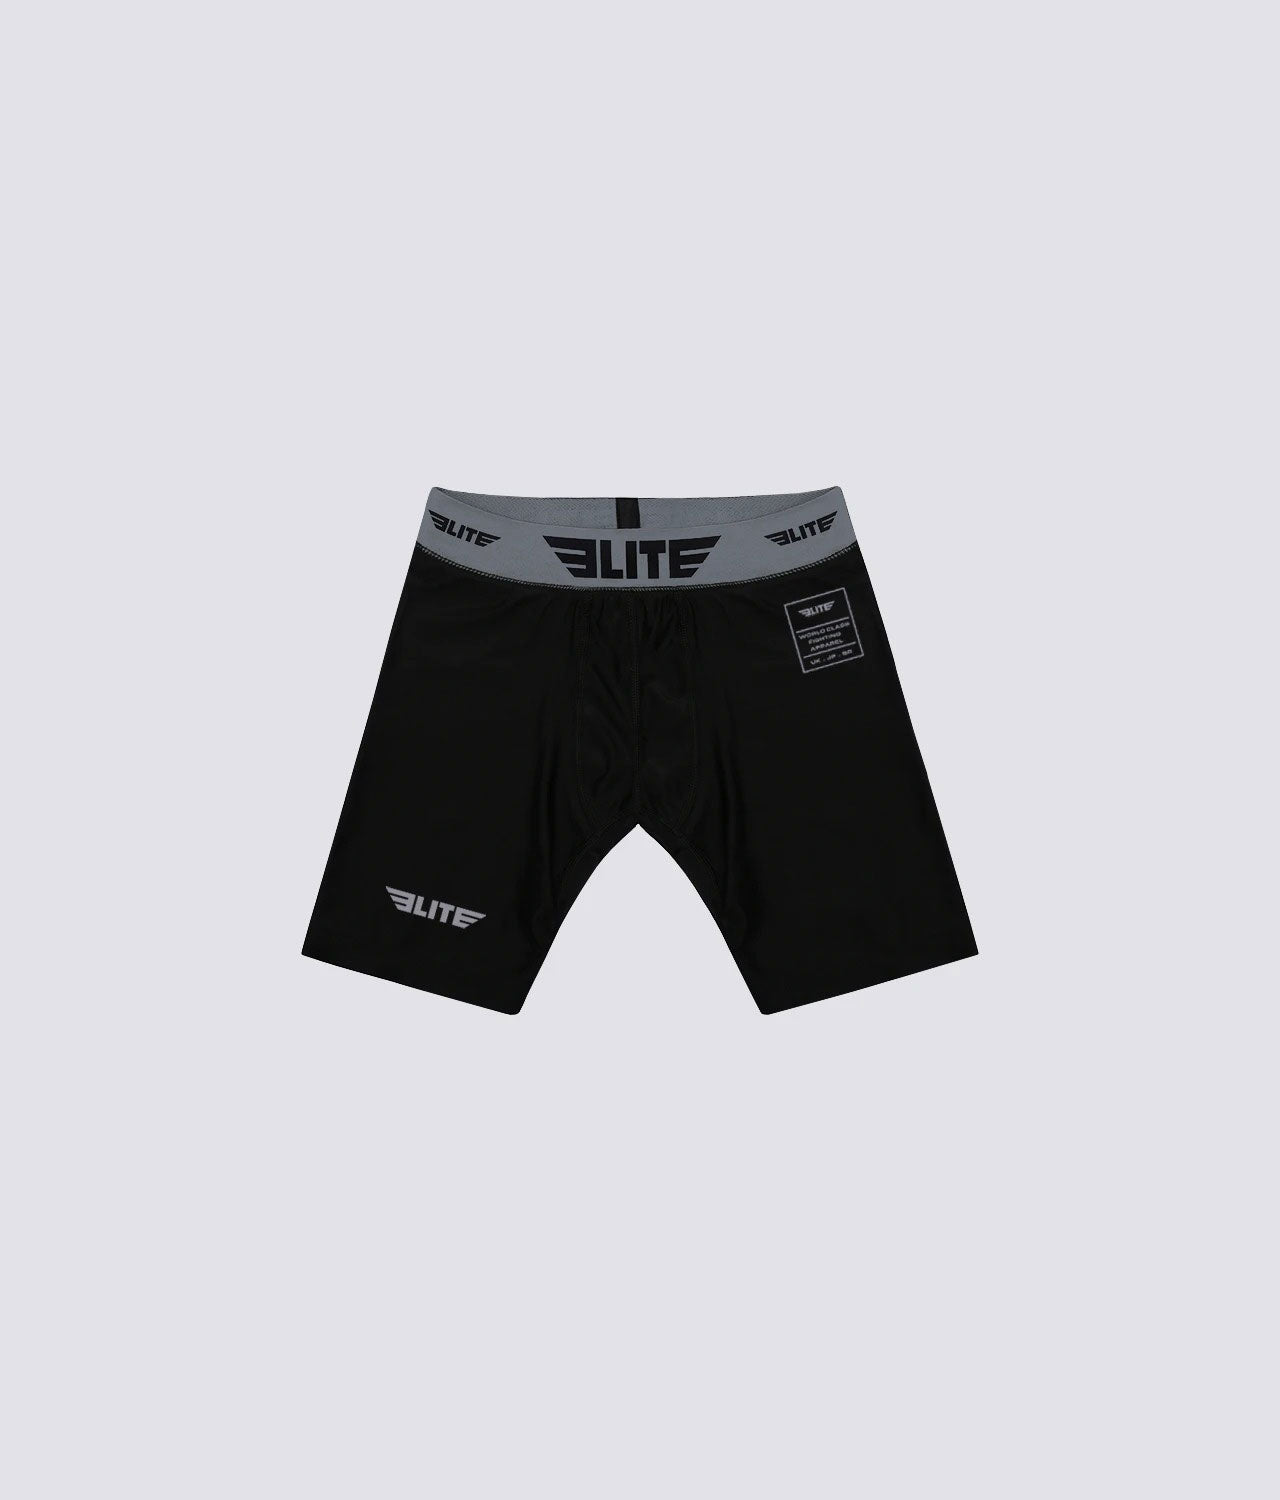 Men's Black Compression Boxing Shorts